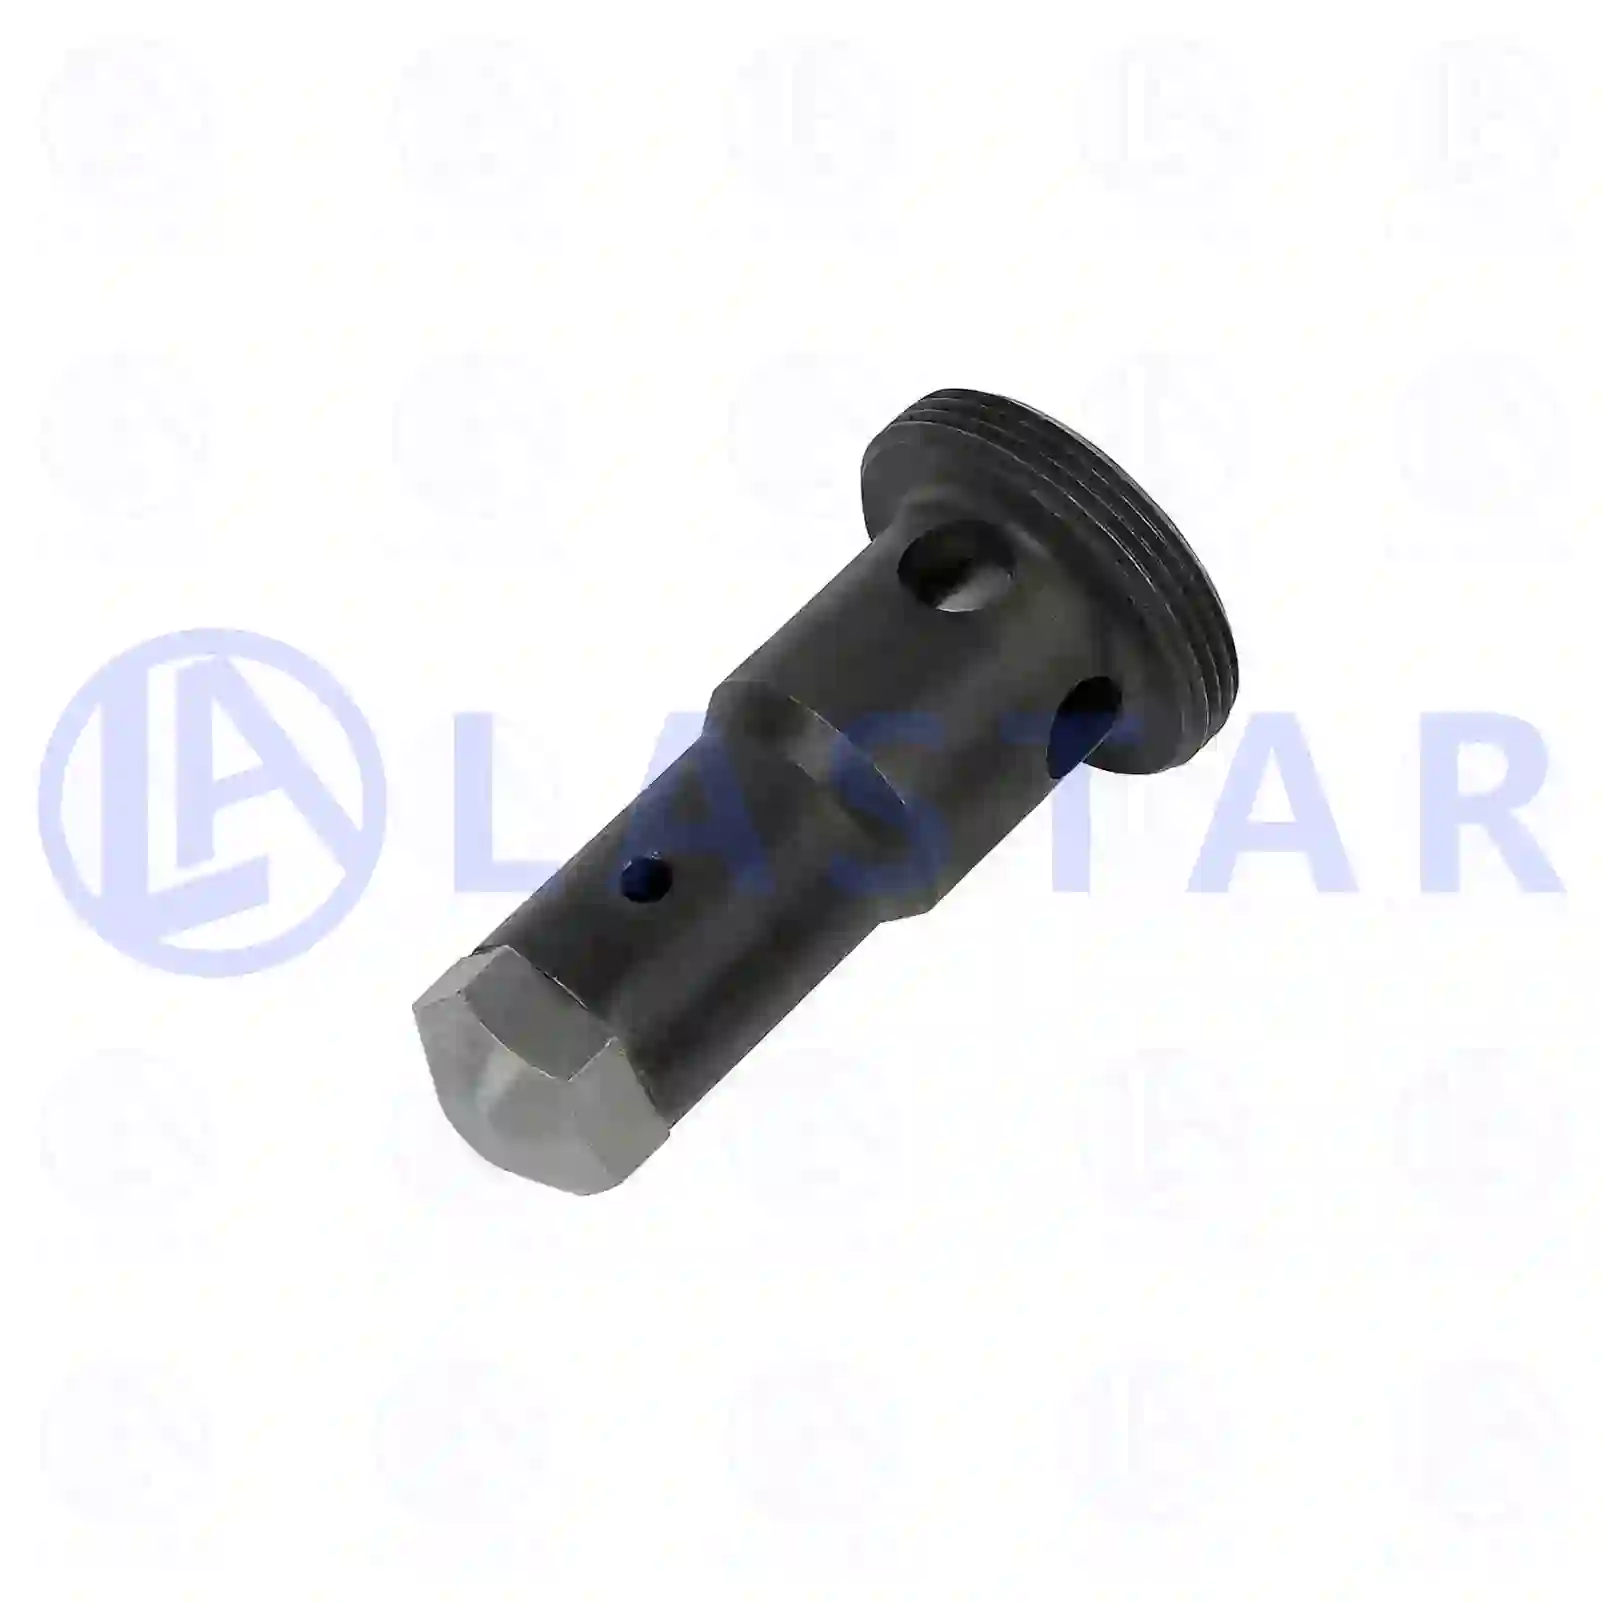  Oil pressure valve || Lastar Spare Part | Truck Spare Parts, Auotomotive Spare Parts